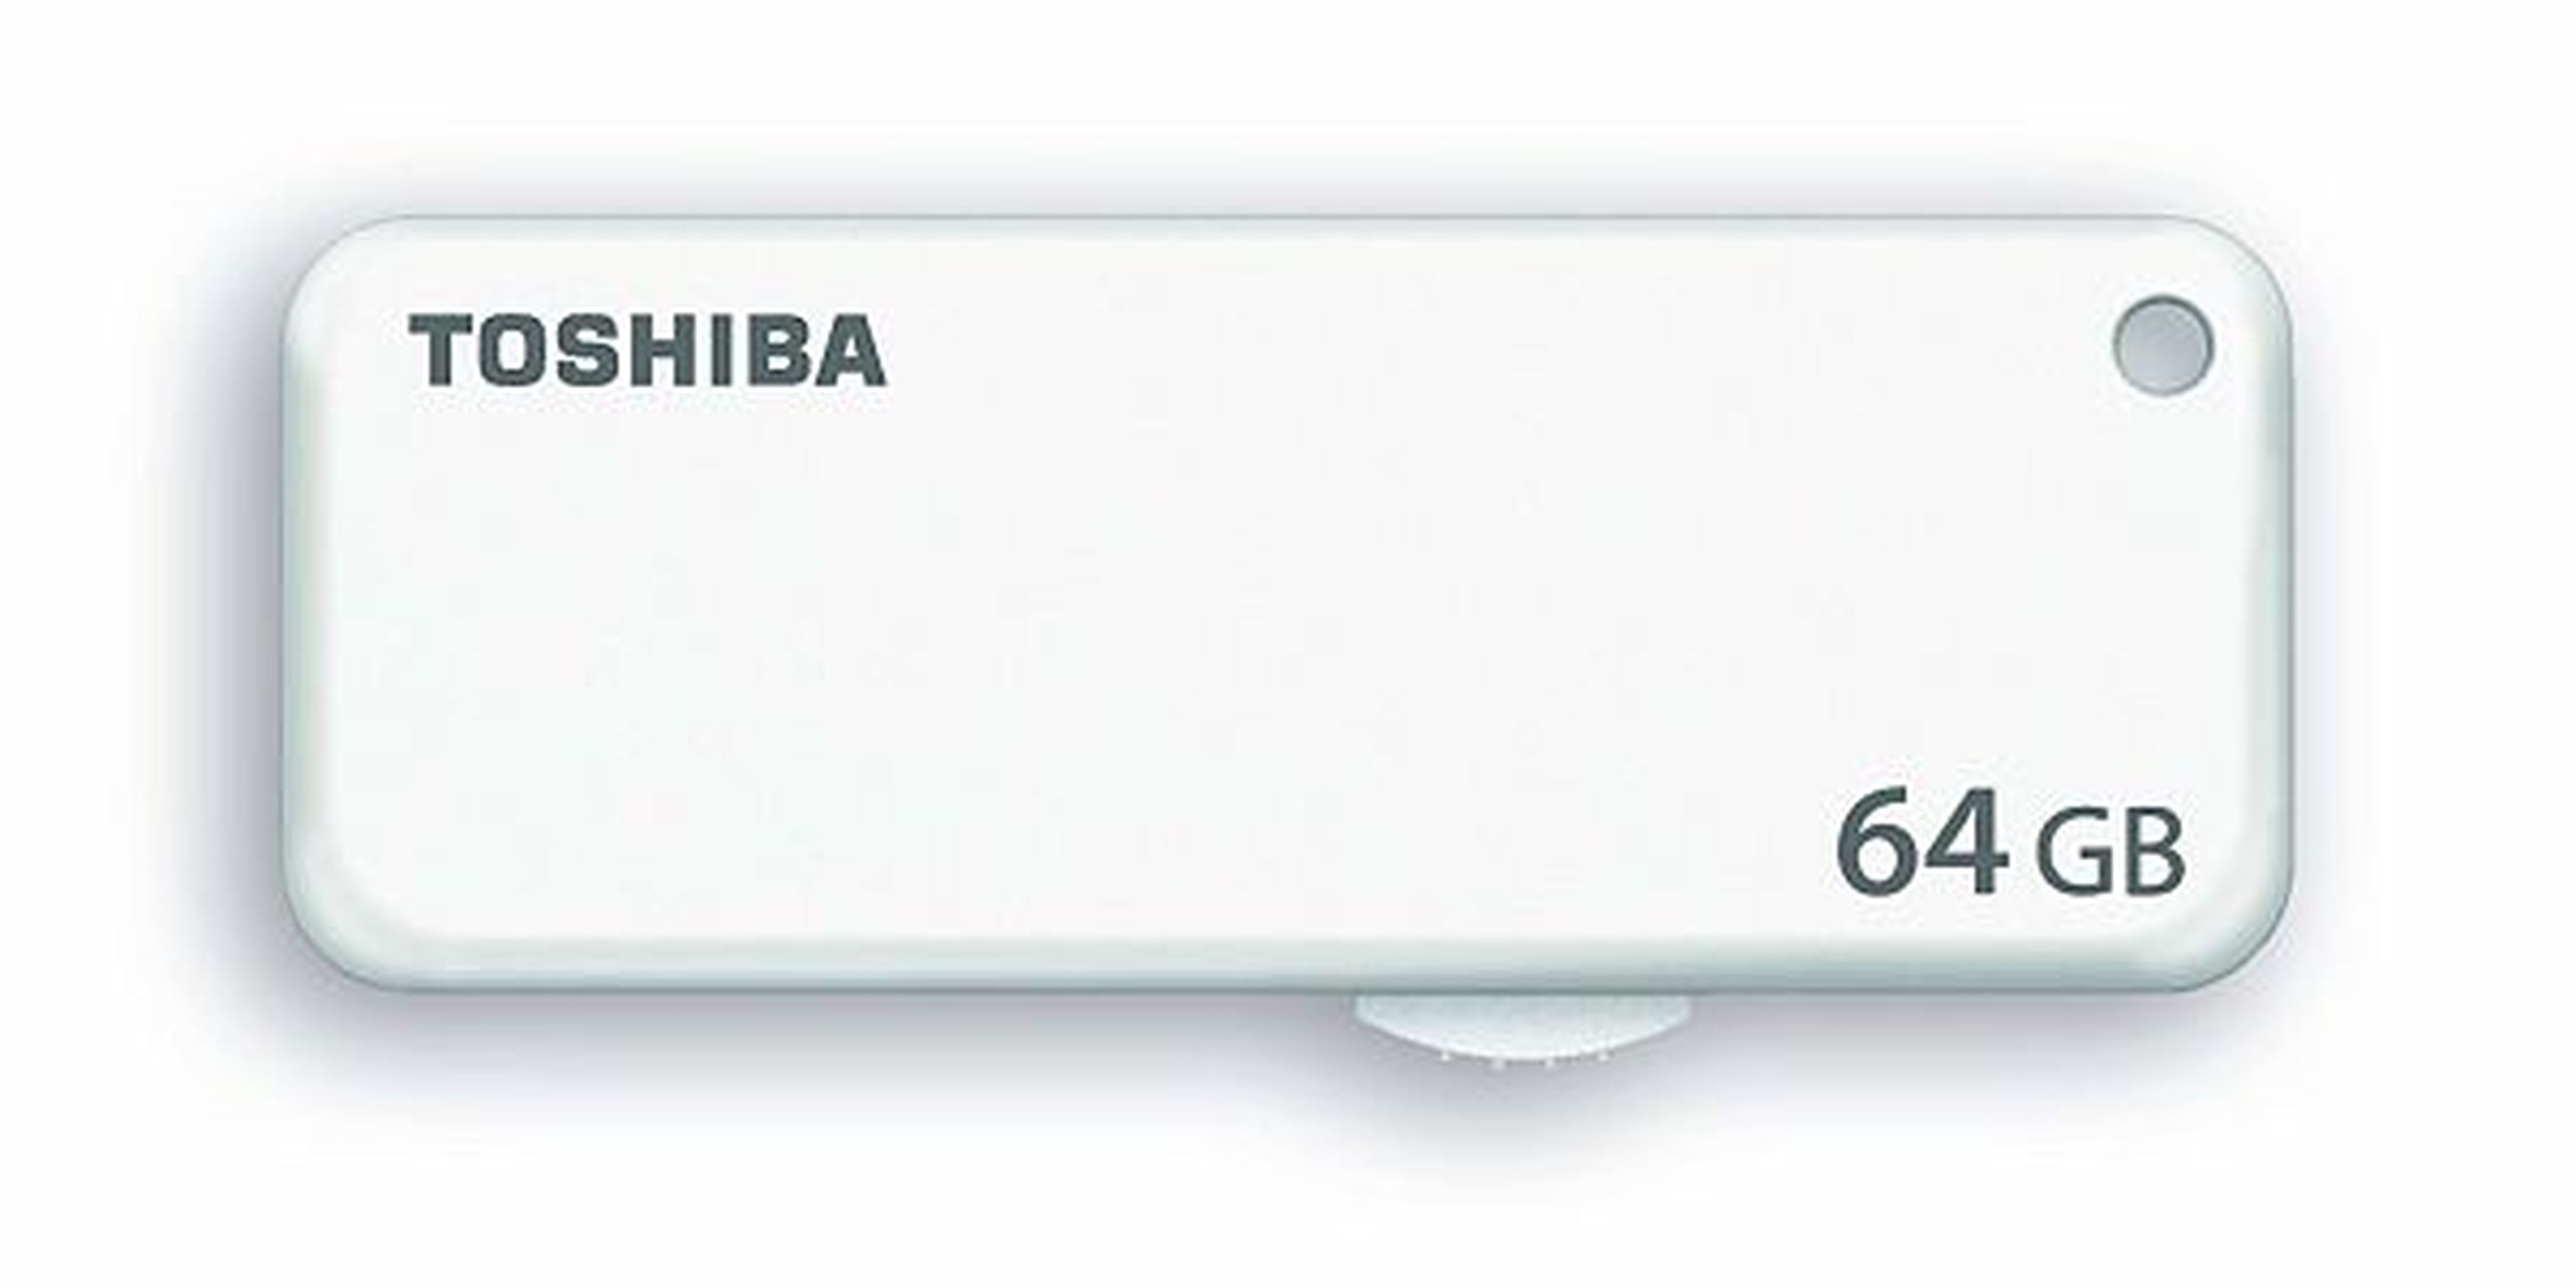 Una memoria flash de 64 GB de Toshiba